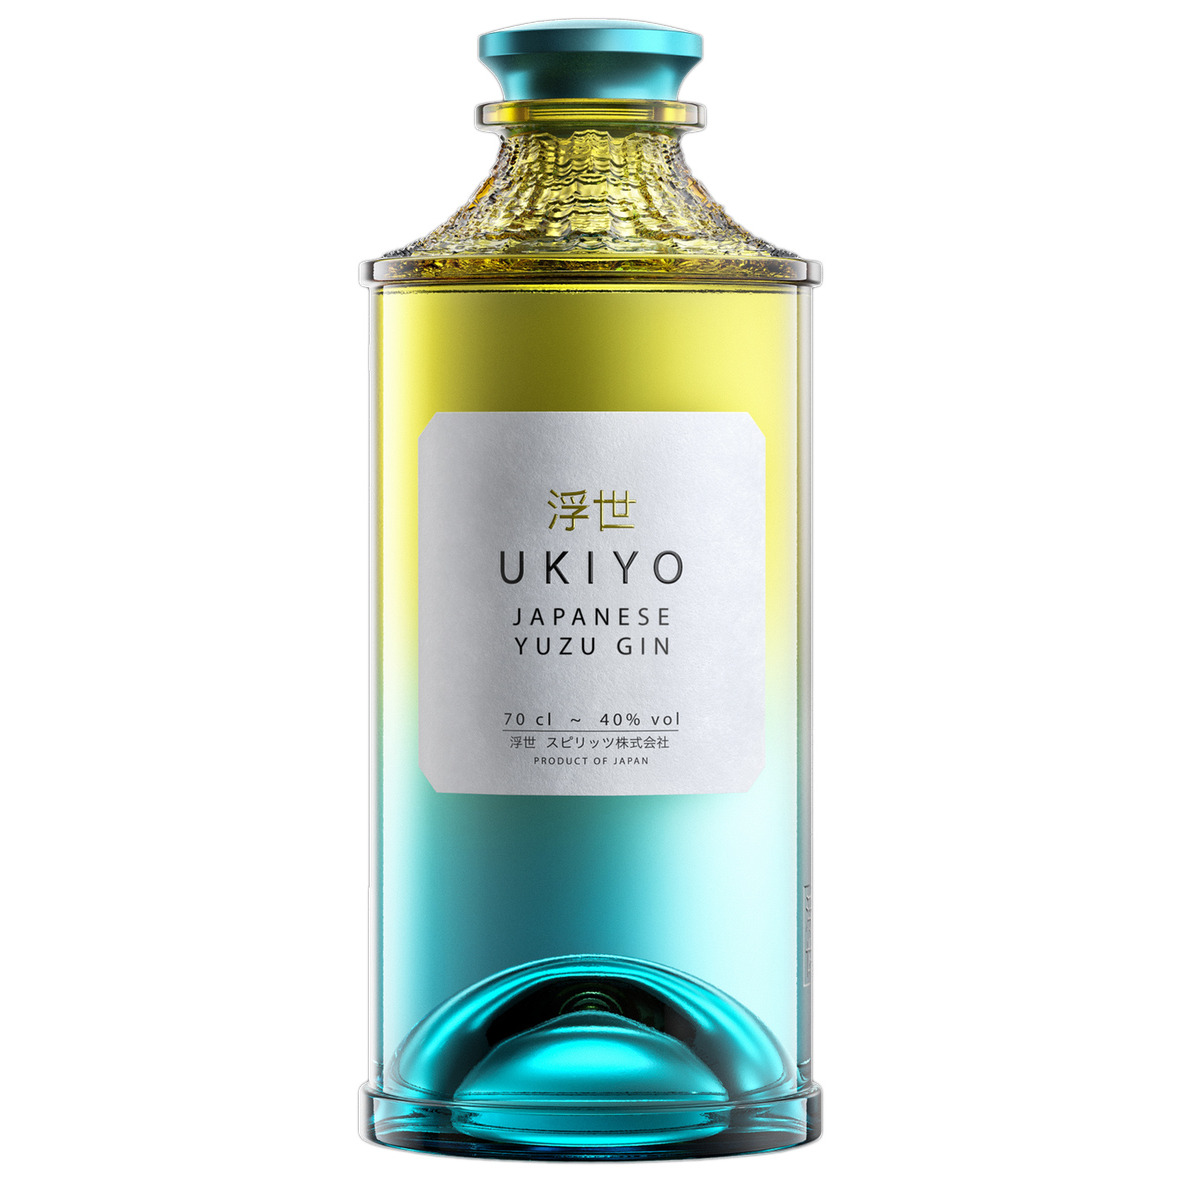 Ukiyo - Japanese Yuzu Gin 70cl